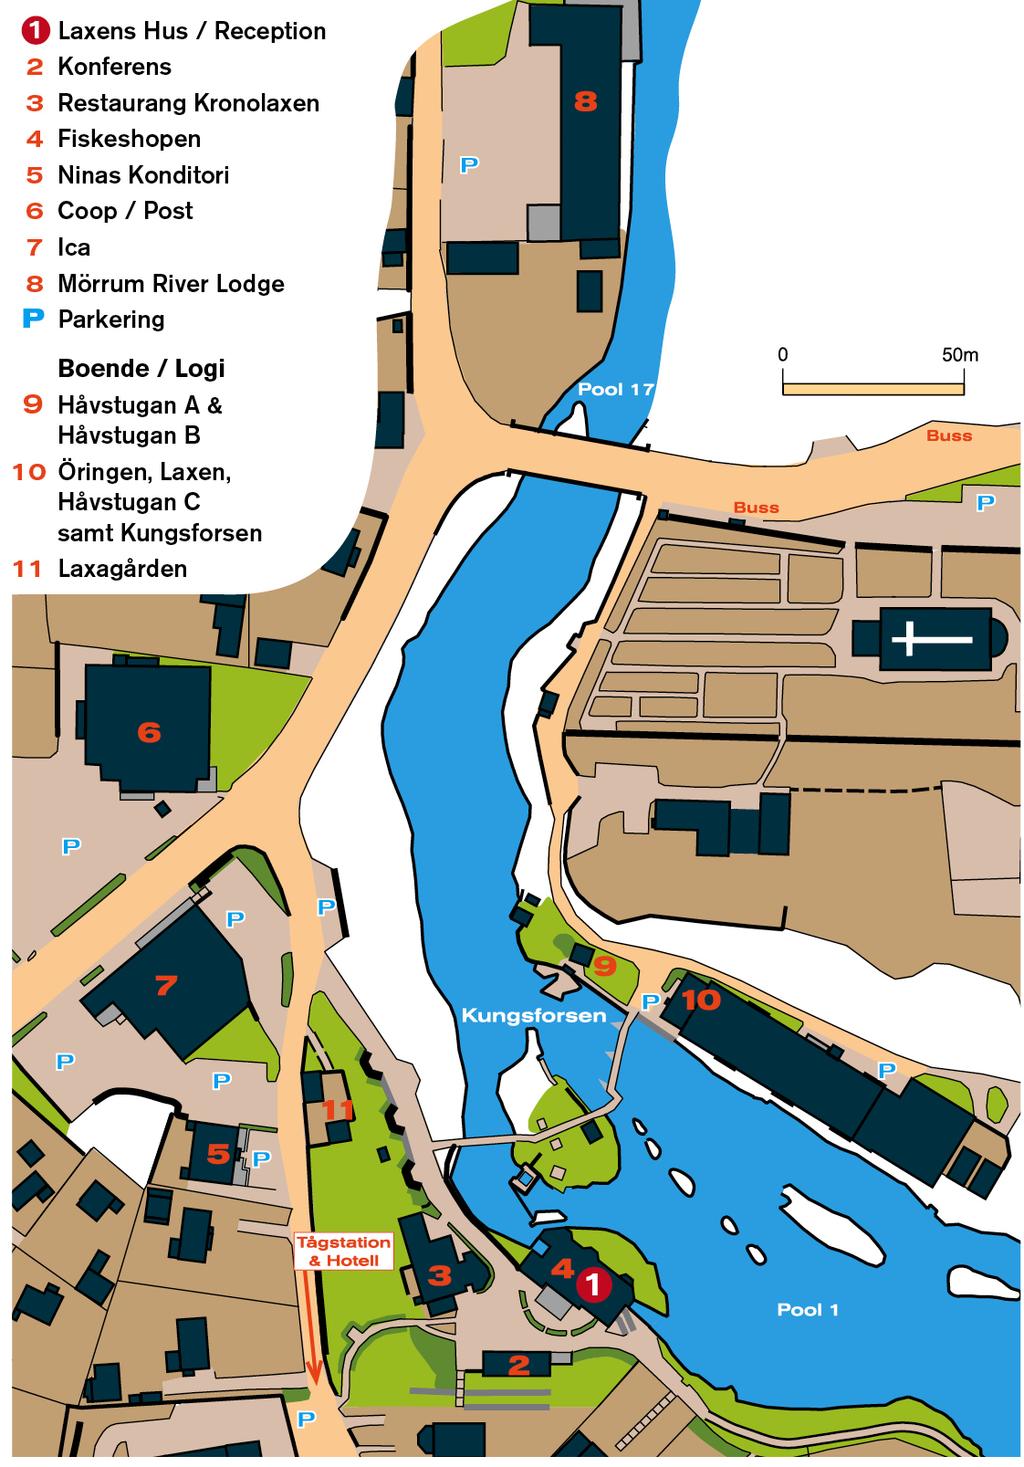 Mörrumsåns sträckor Hovmansbygd Härnäs Hemsjö En 3,7 km lång fiskesträcka längst norrut av de tre fiskesträckor som har tillgång till genom arrendeavtal med Uniper.